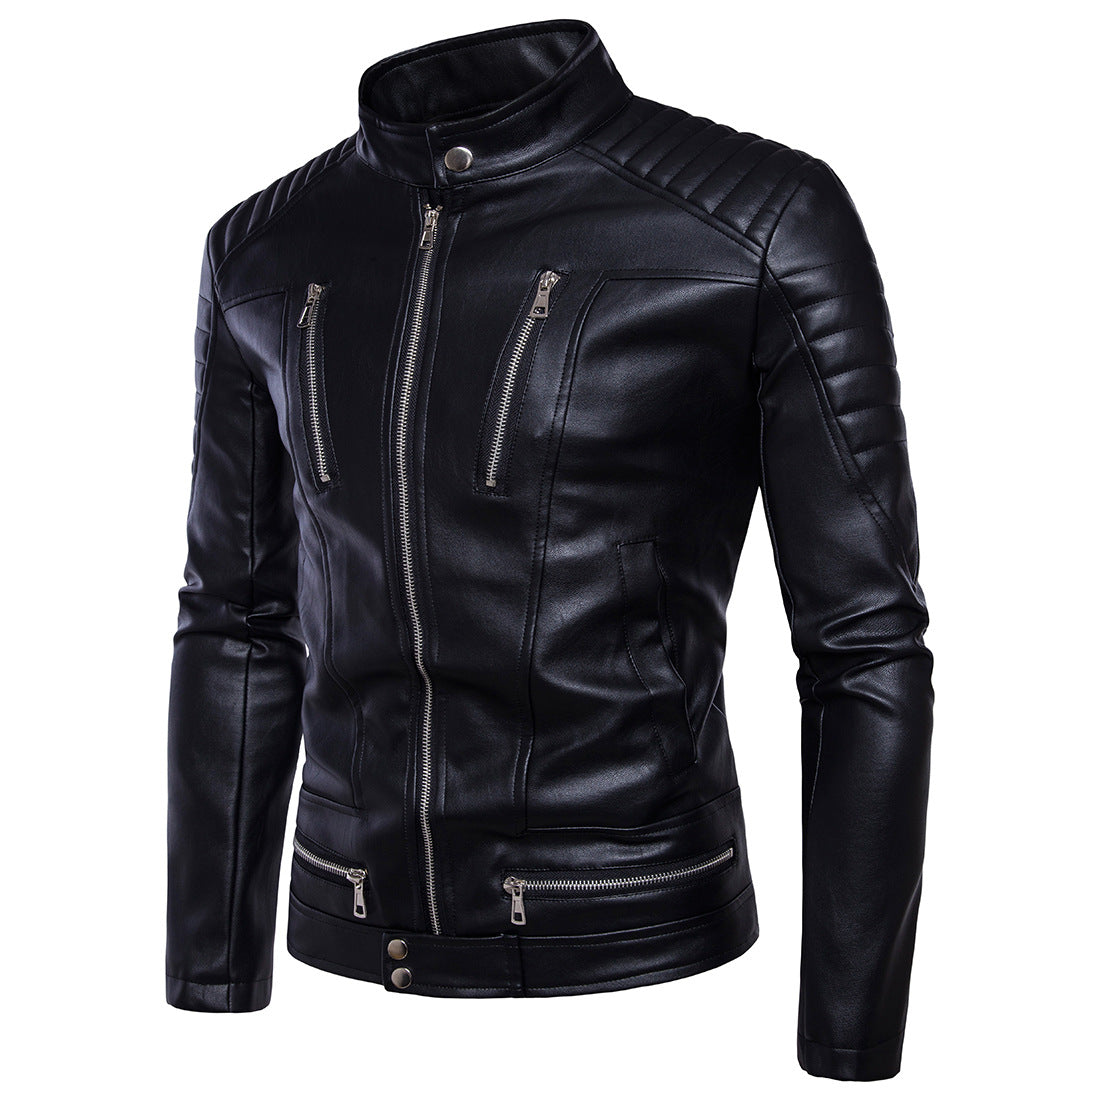 Jacheta de motociclist pentru barbati, din piele ecologica, model la moda si stil creativ, jacheta cu guler drept, potrivit pentru sezonul de iarna.